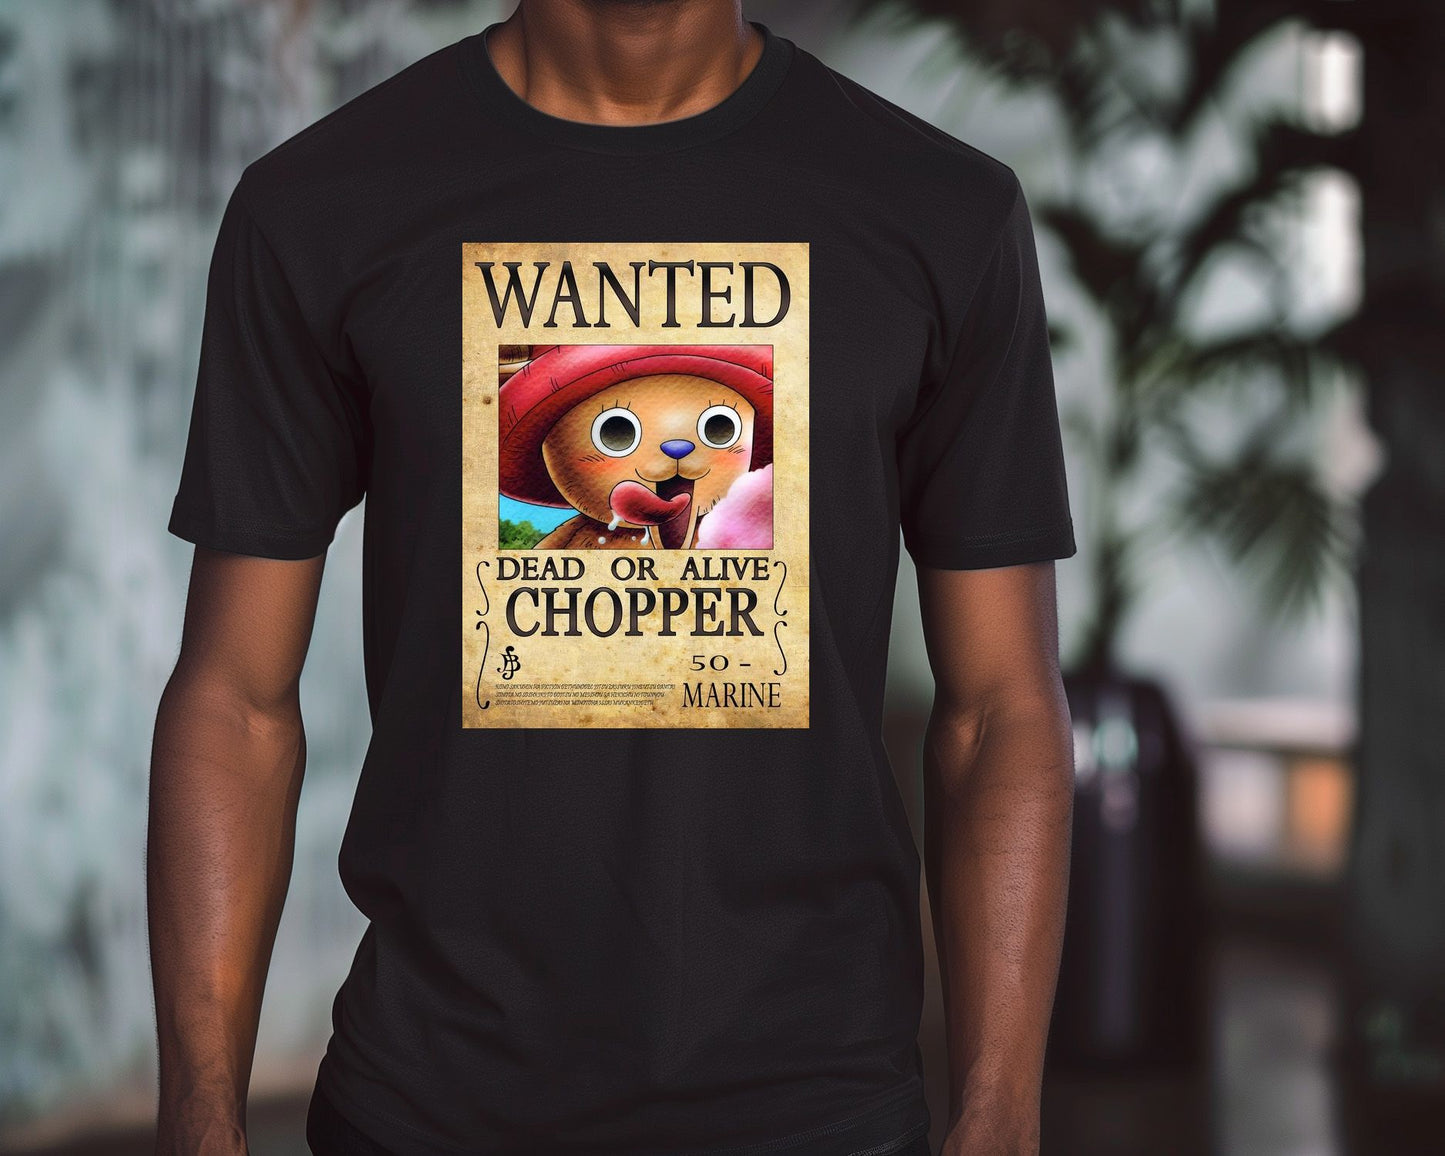 chopper - @chevi